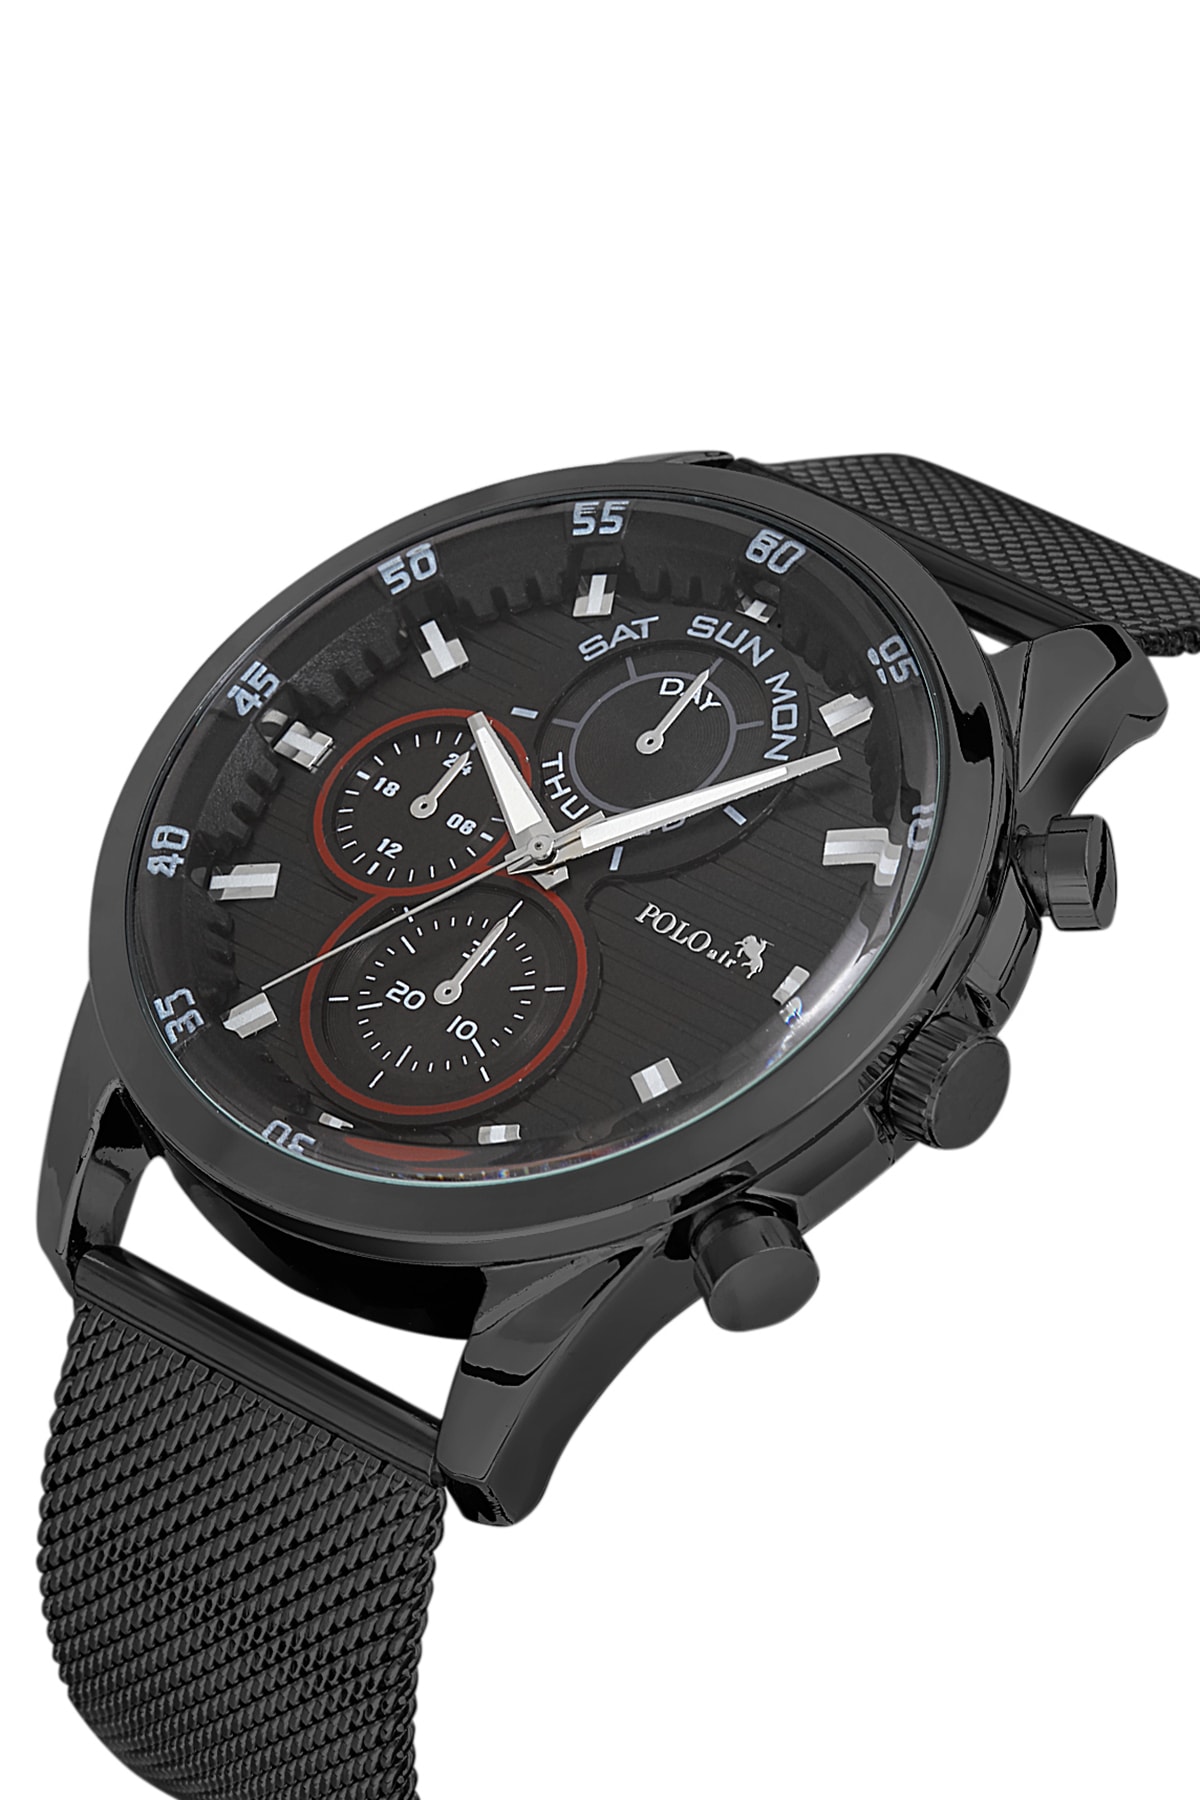 Polo Air Men's Wristwatch Black